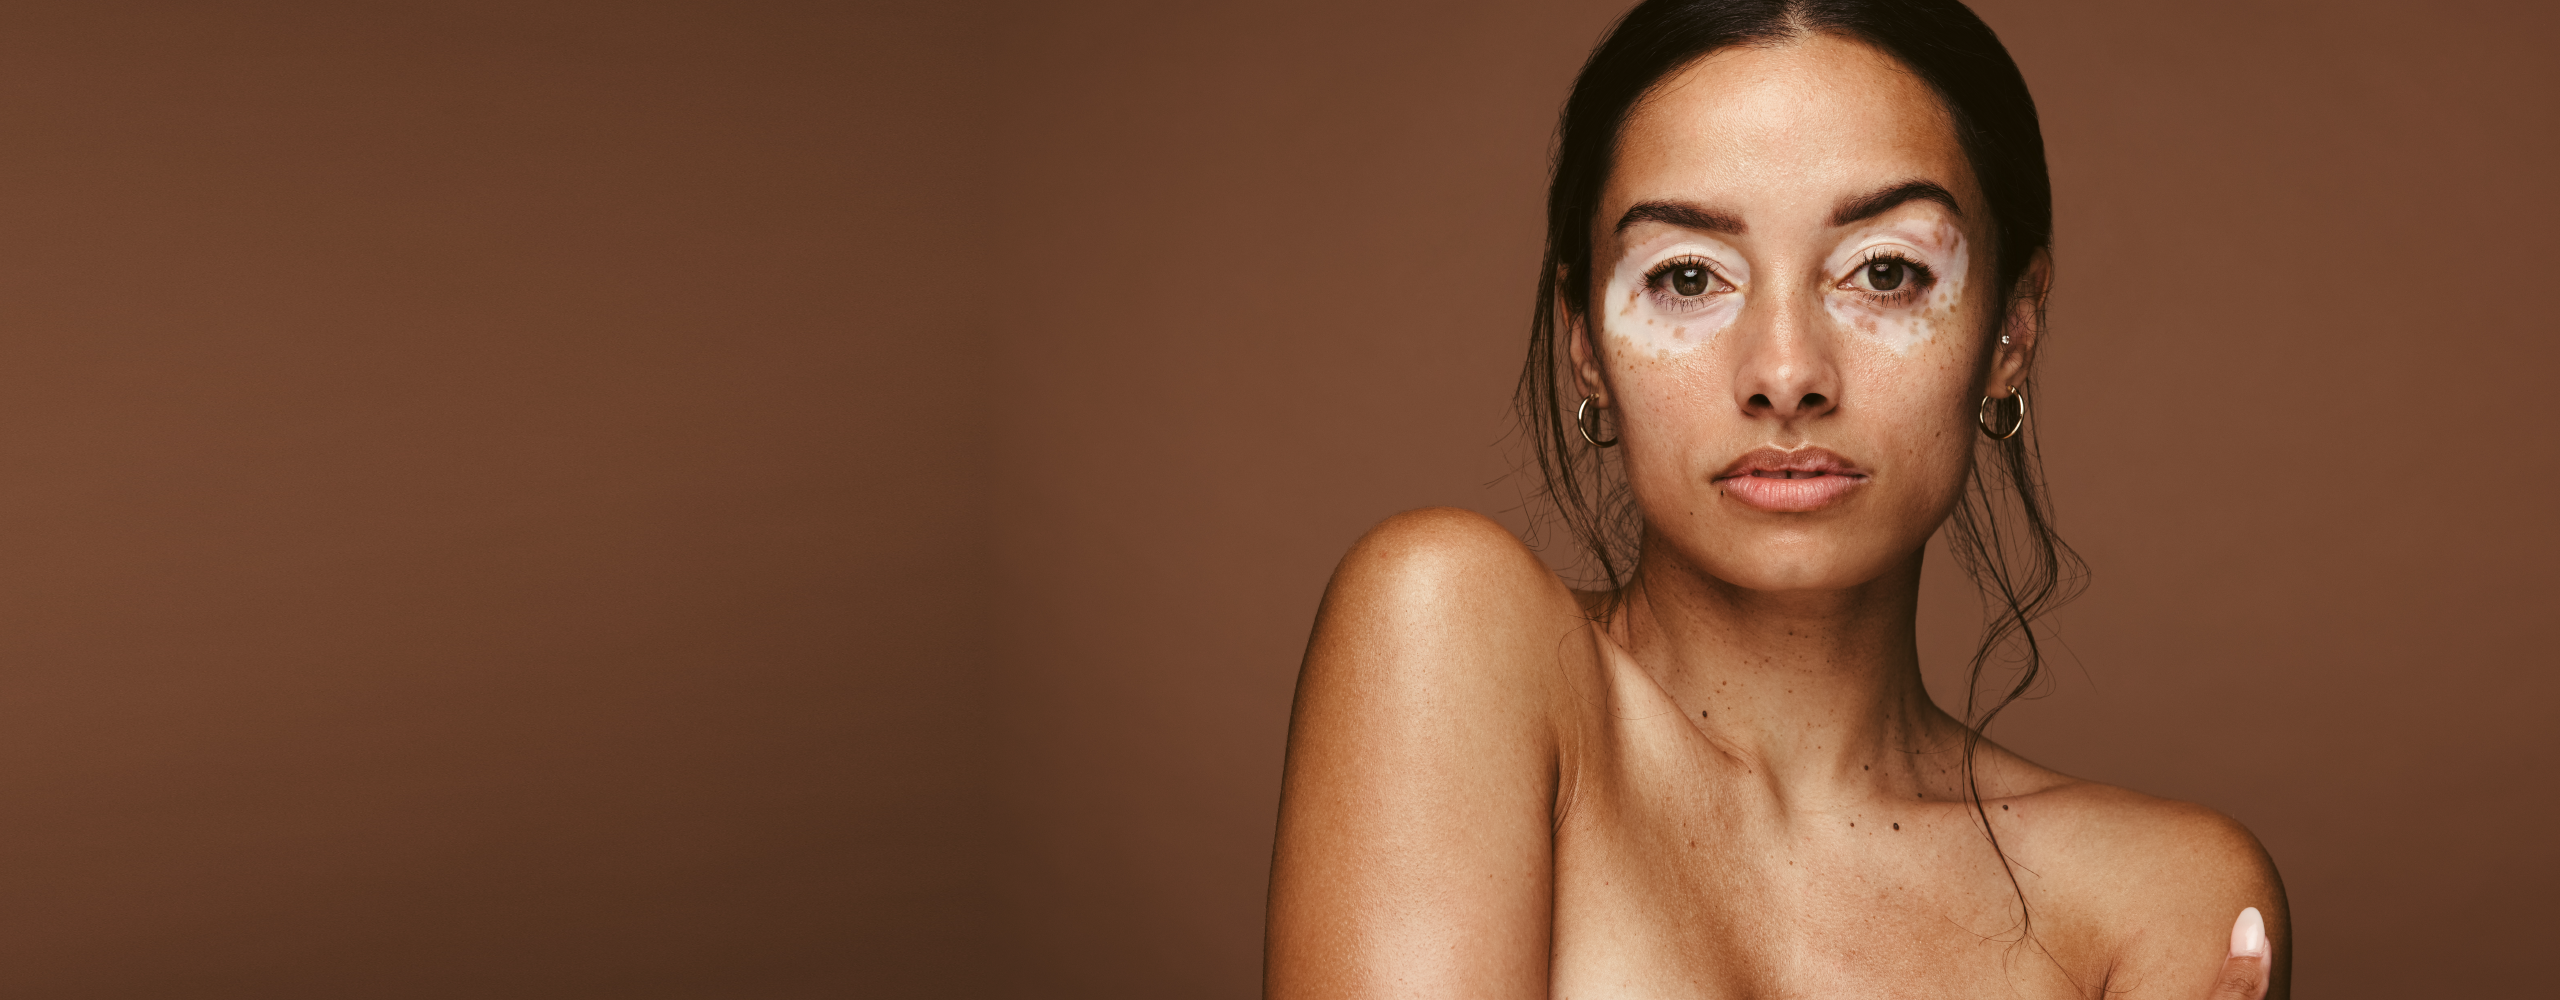 Persona con vitiligo en la piel